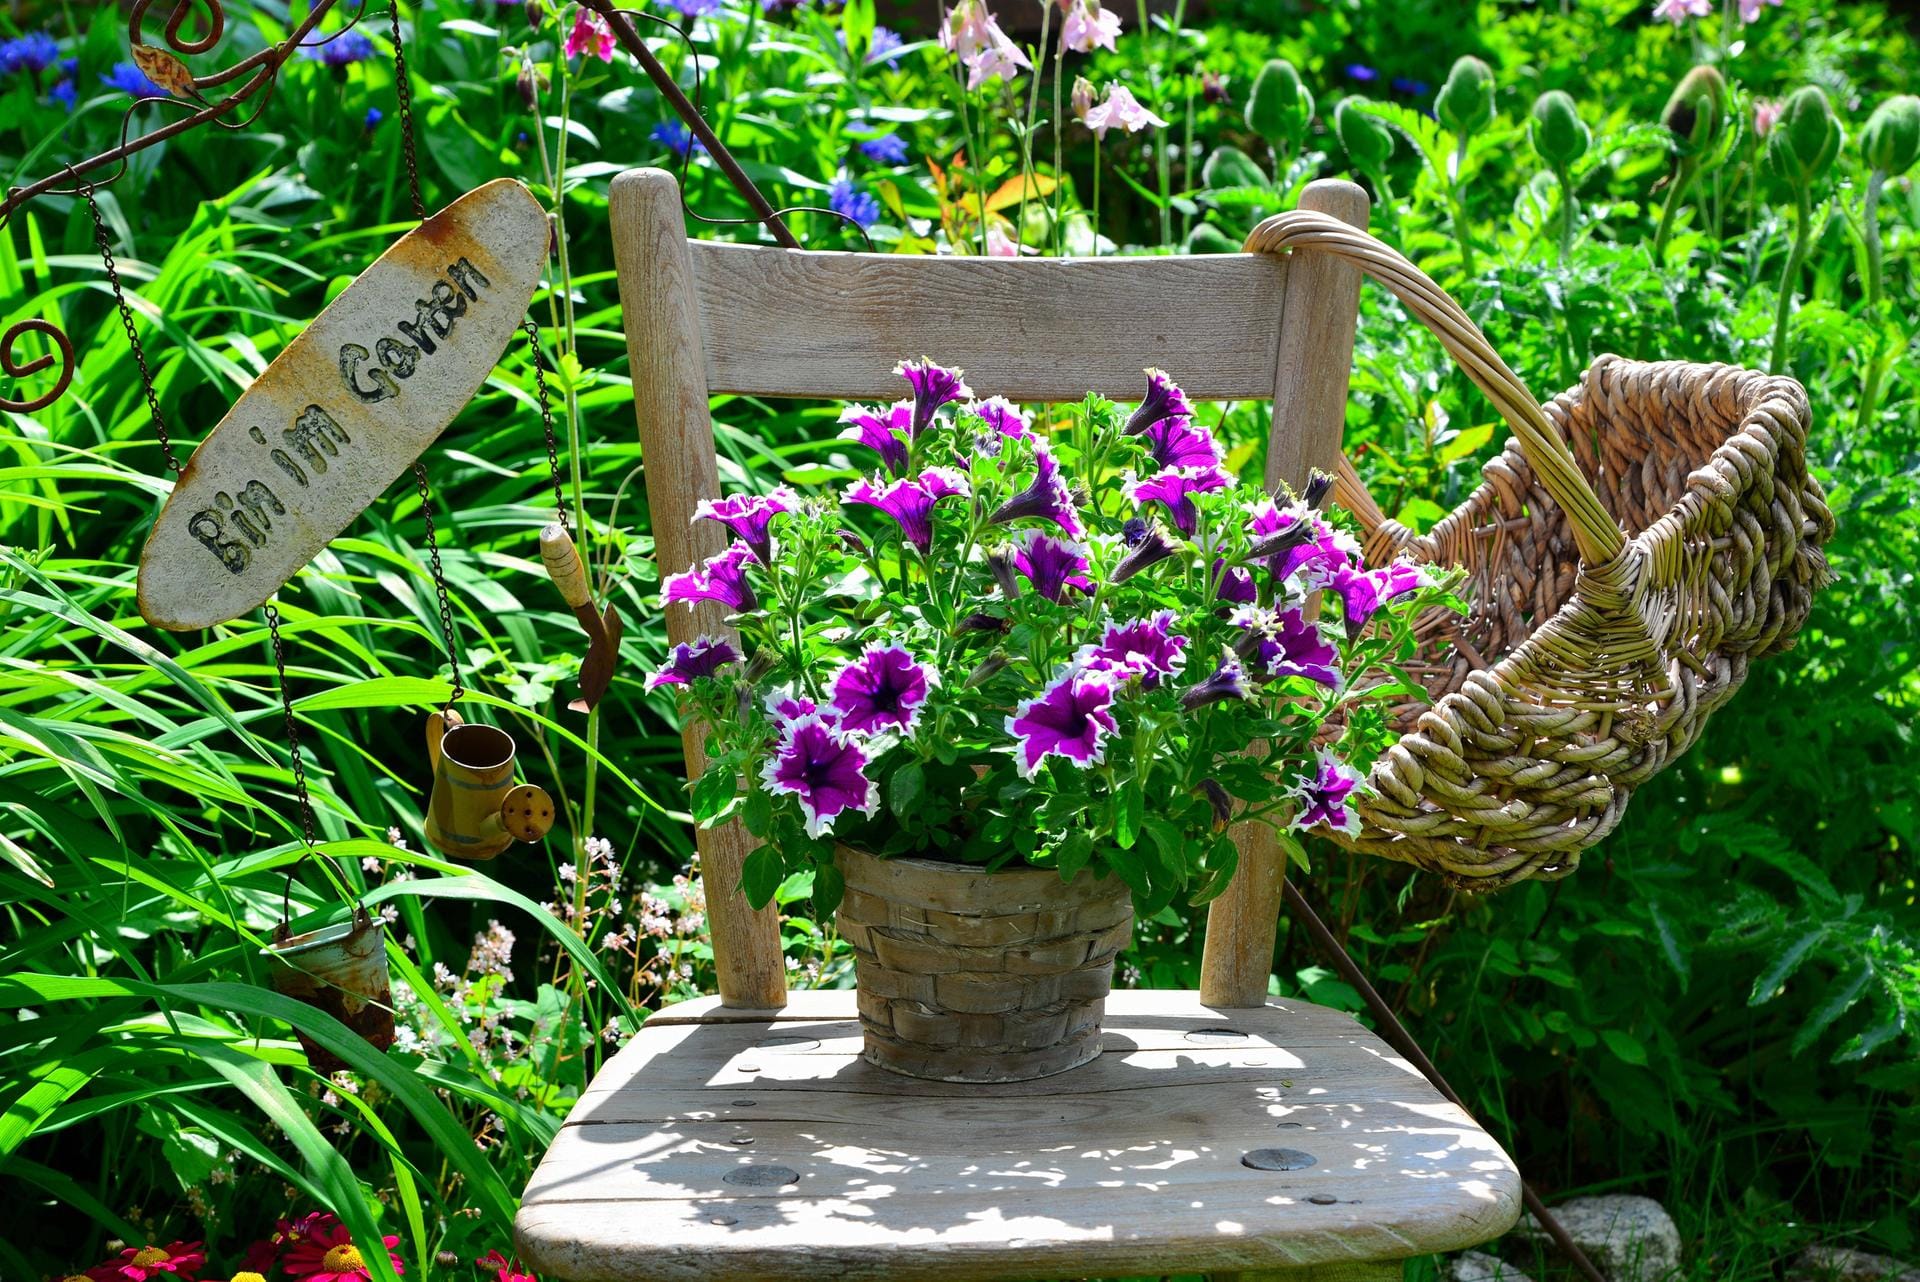 Pflanzenstuhl: Stellen Sie einfach eine blühende Pflanze auf die Sitzfläche und dekorieren Sie die Stuhllehnen. Fertig ist der blumige Hingucker.